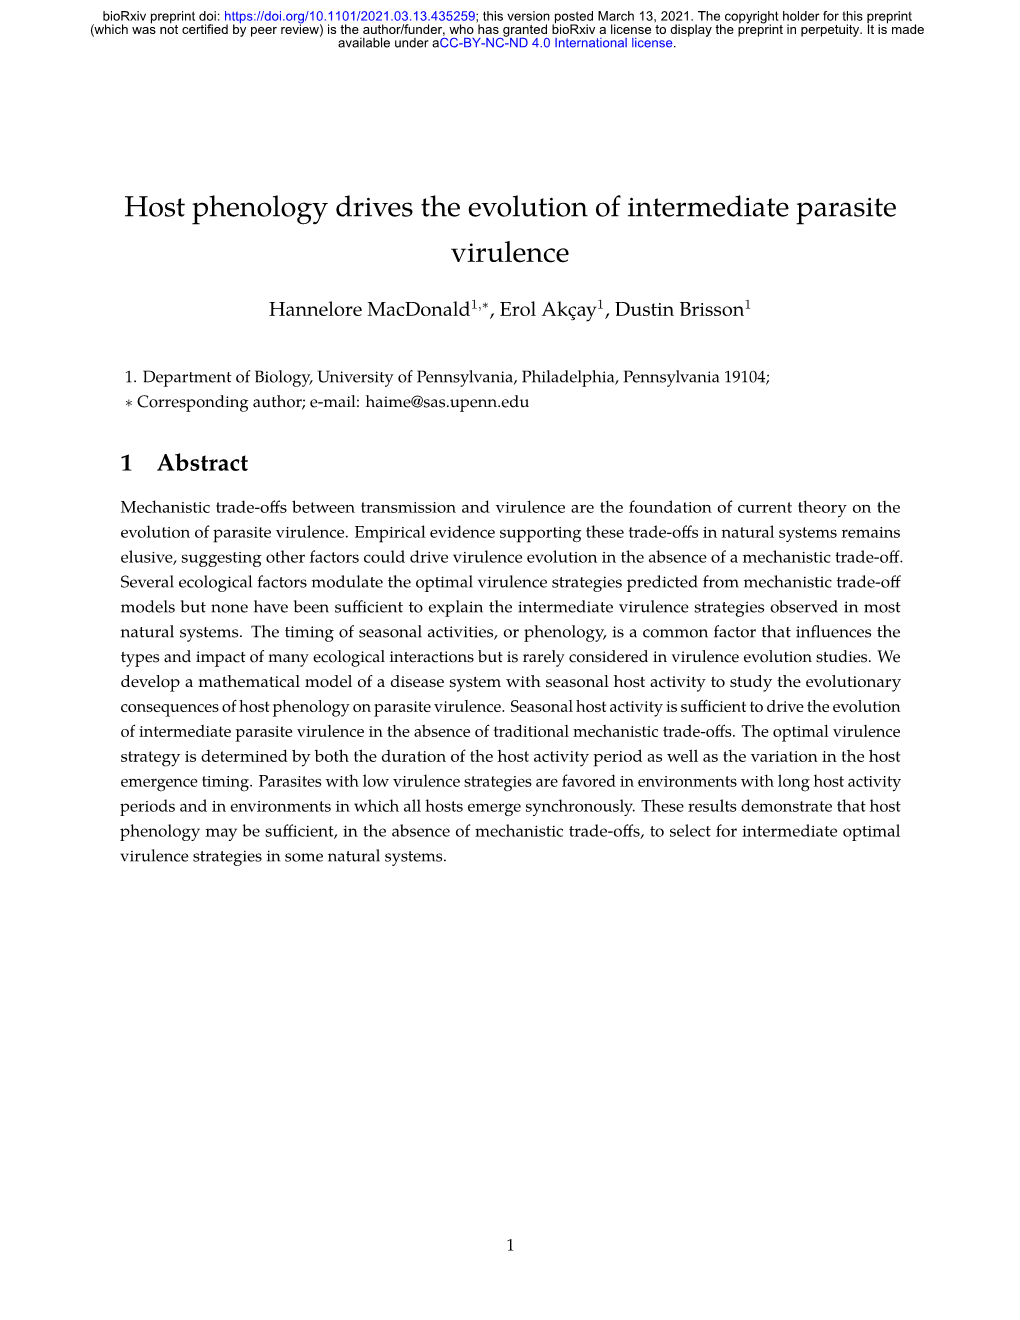 Host Phenology Drives the Evolution of Intermediate Parasite Virulence